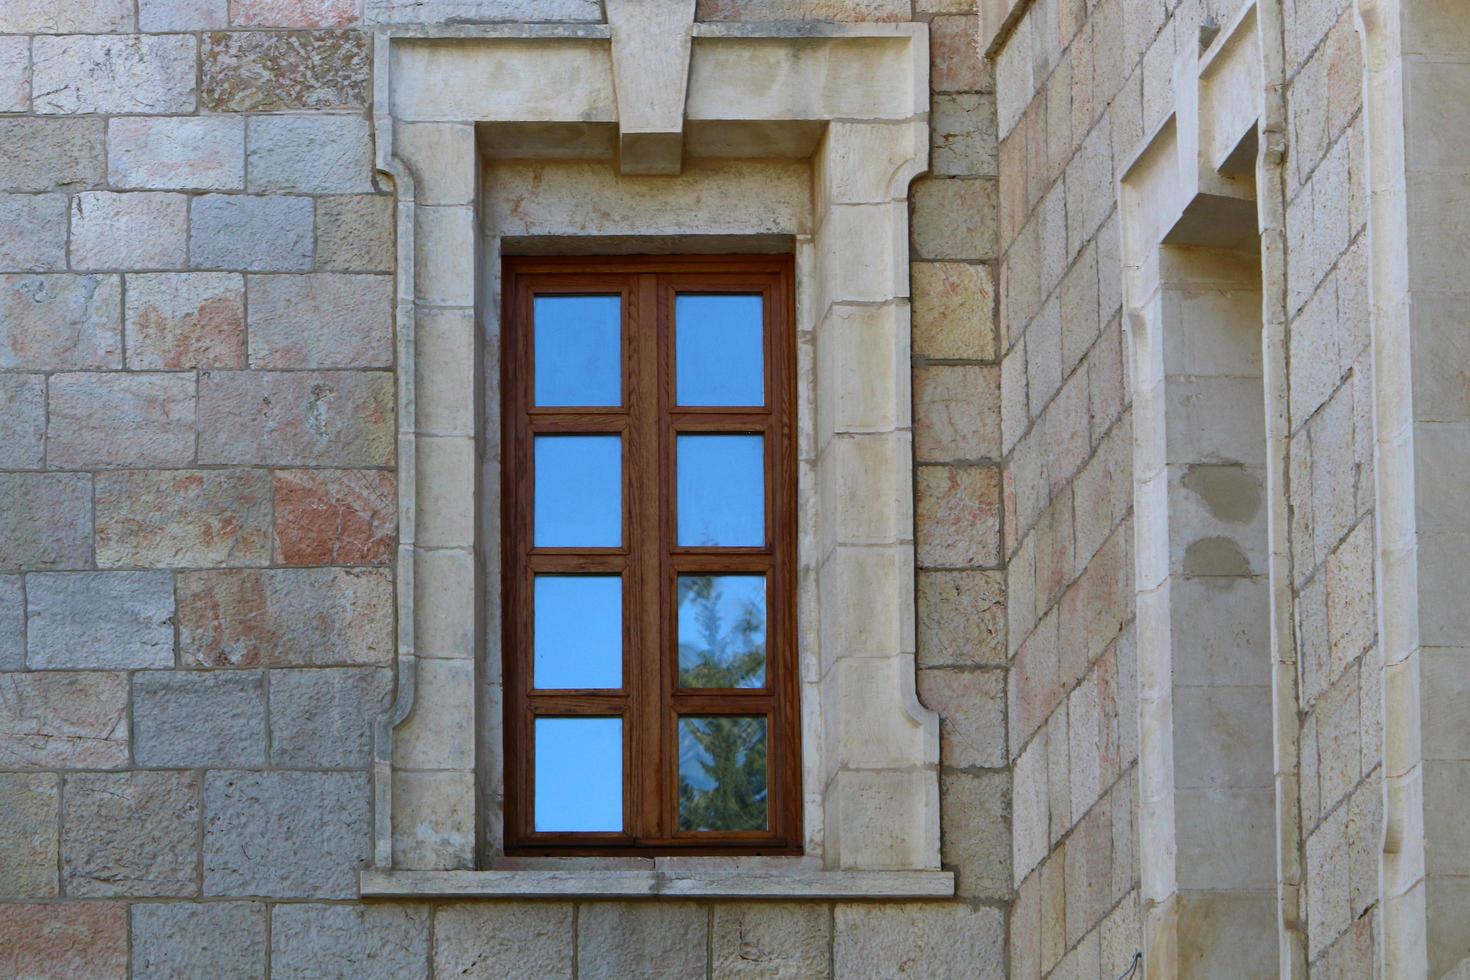 haifa israël 19 mai 2019. petite fenêtre sur la façade d'un immeuble résidentiel. photo